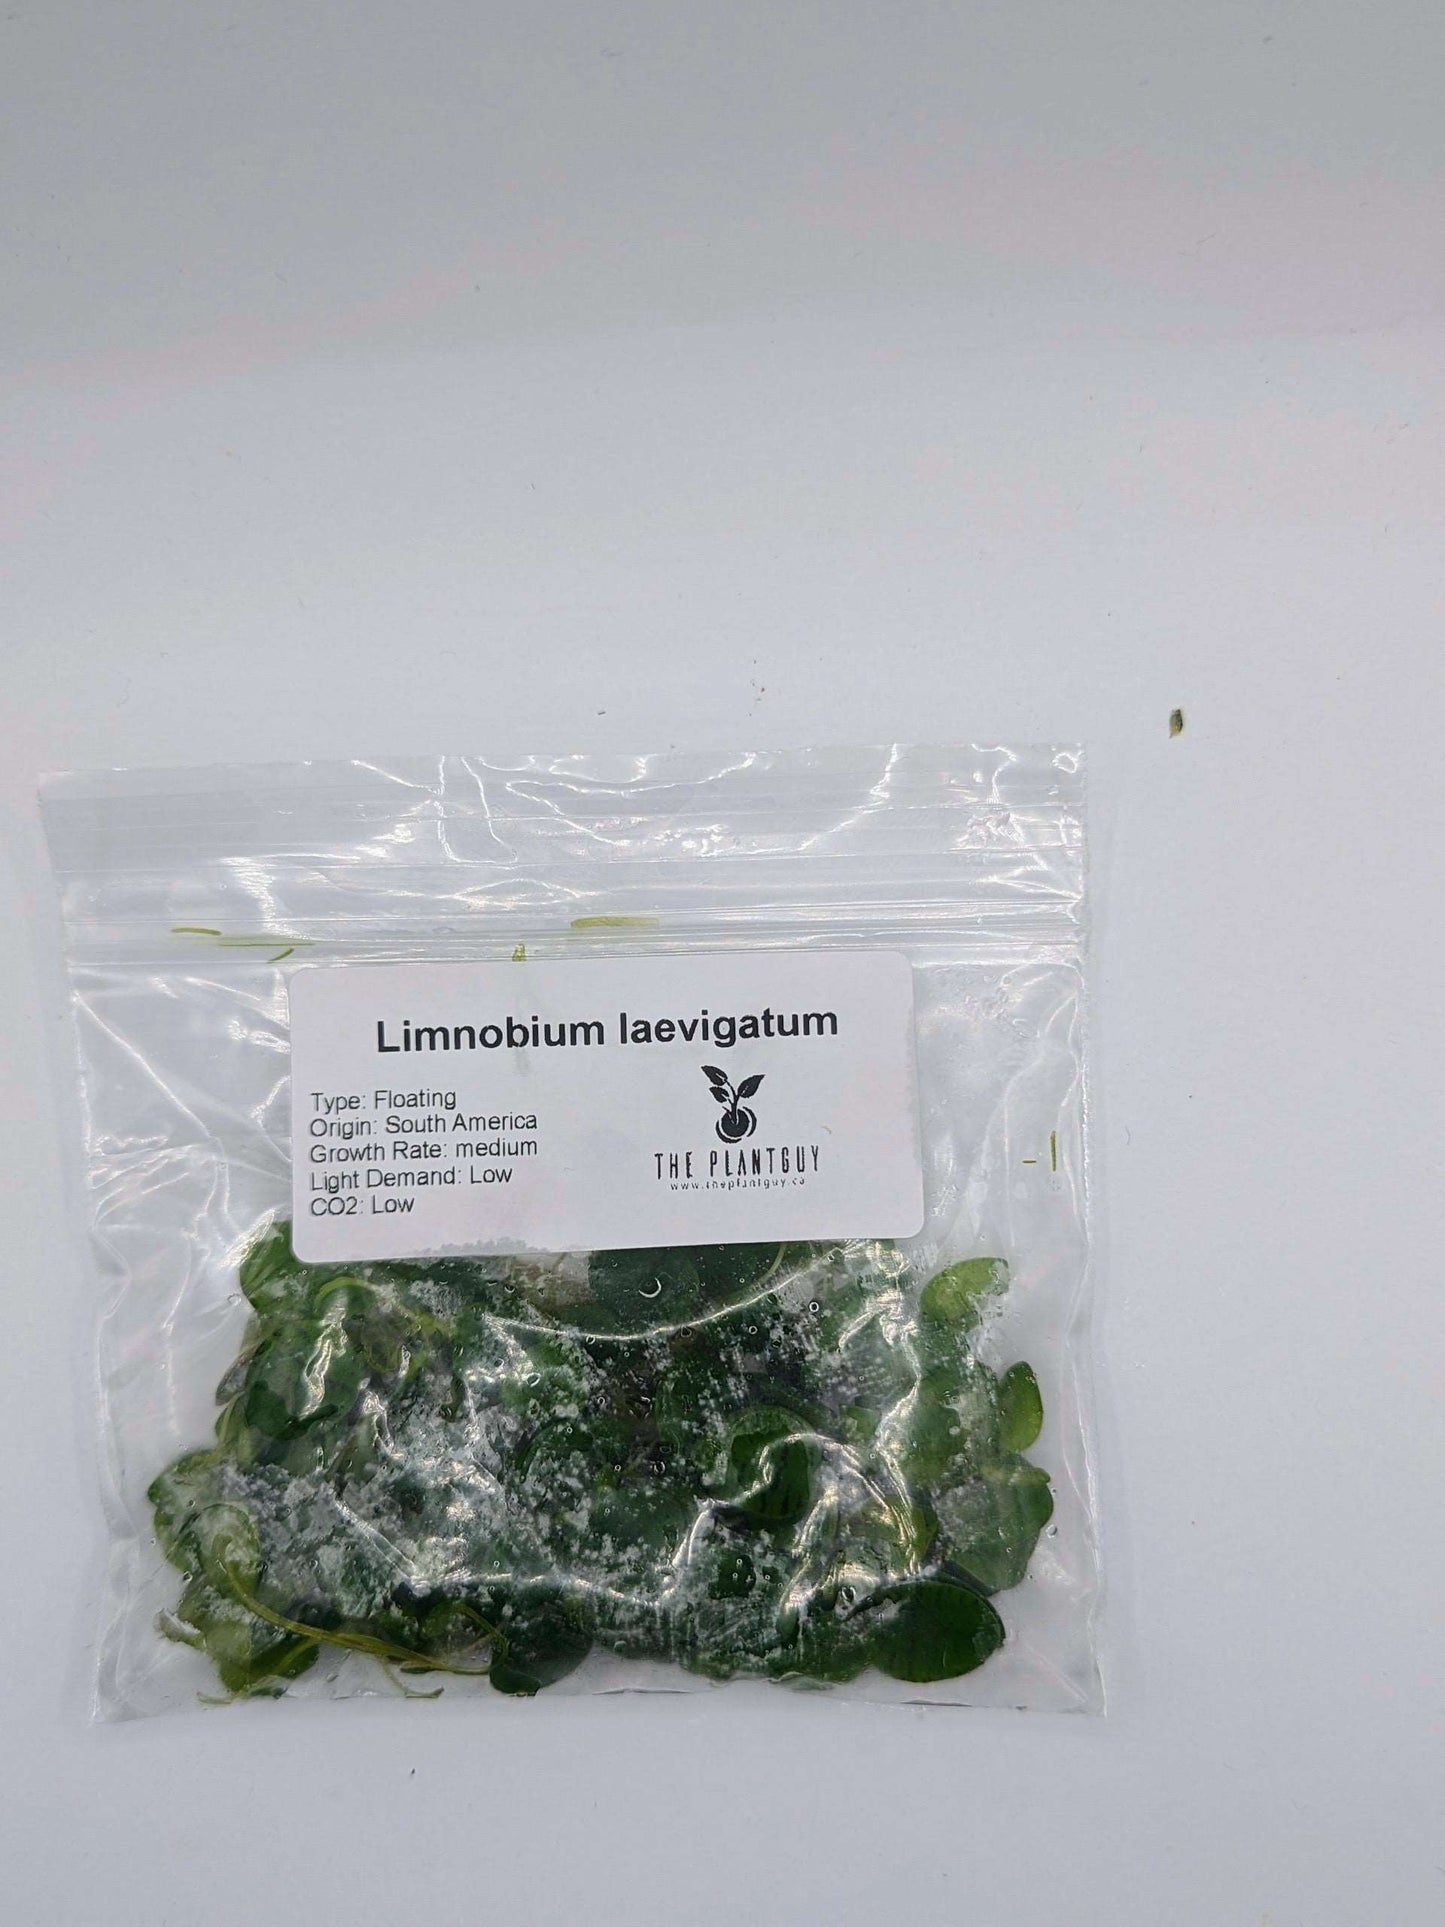 Limnobium laevigatum (PGTC bag)